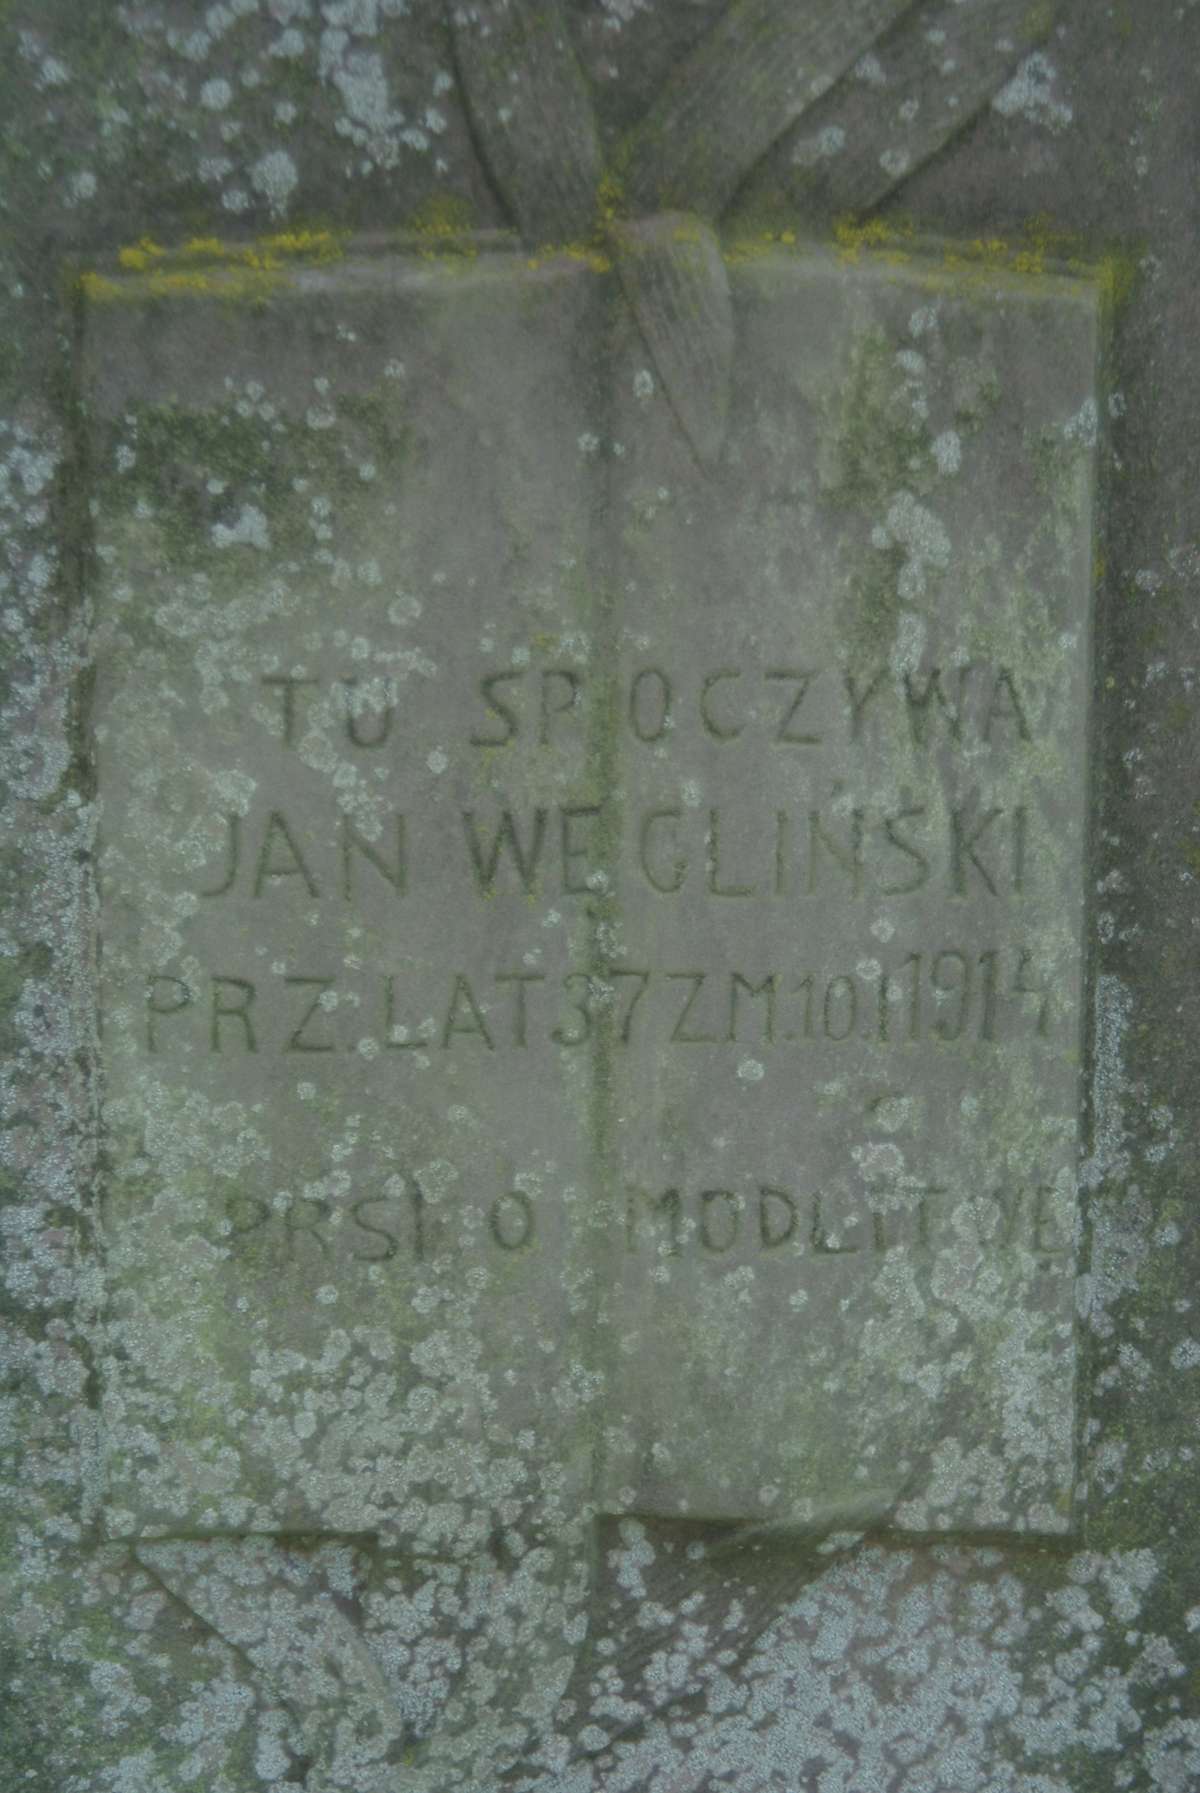 Fragment of Jan Węgliński's tombstone, Zbarazh cemetery, as of 2018